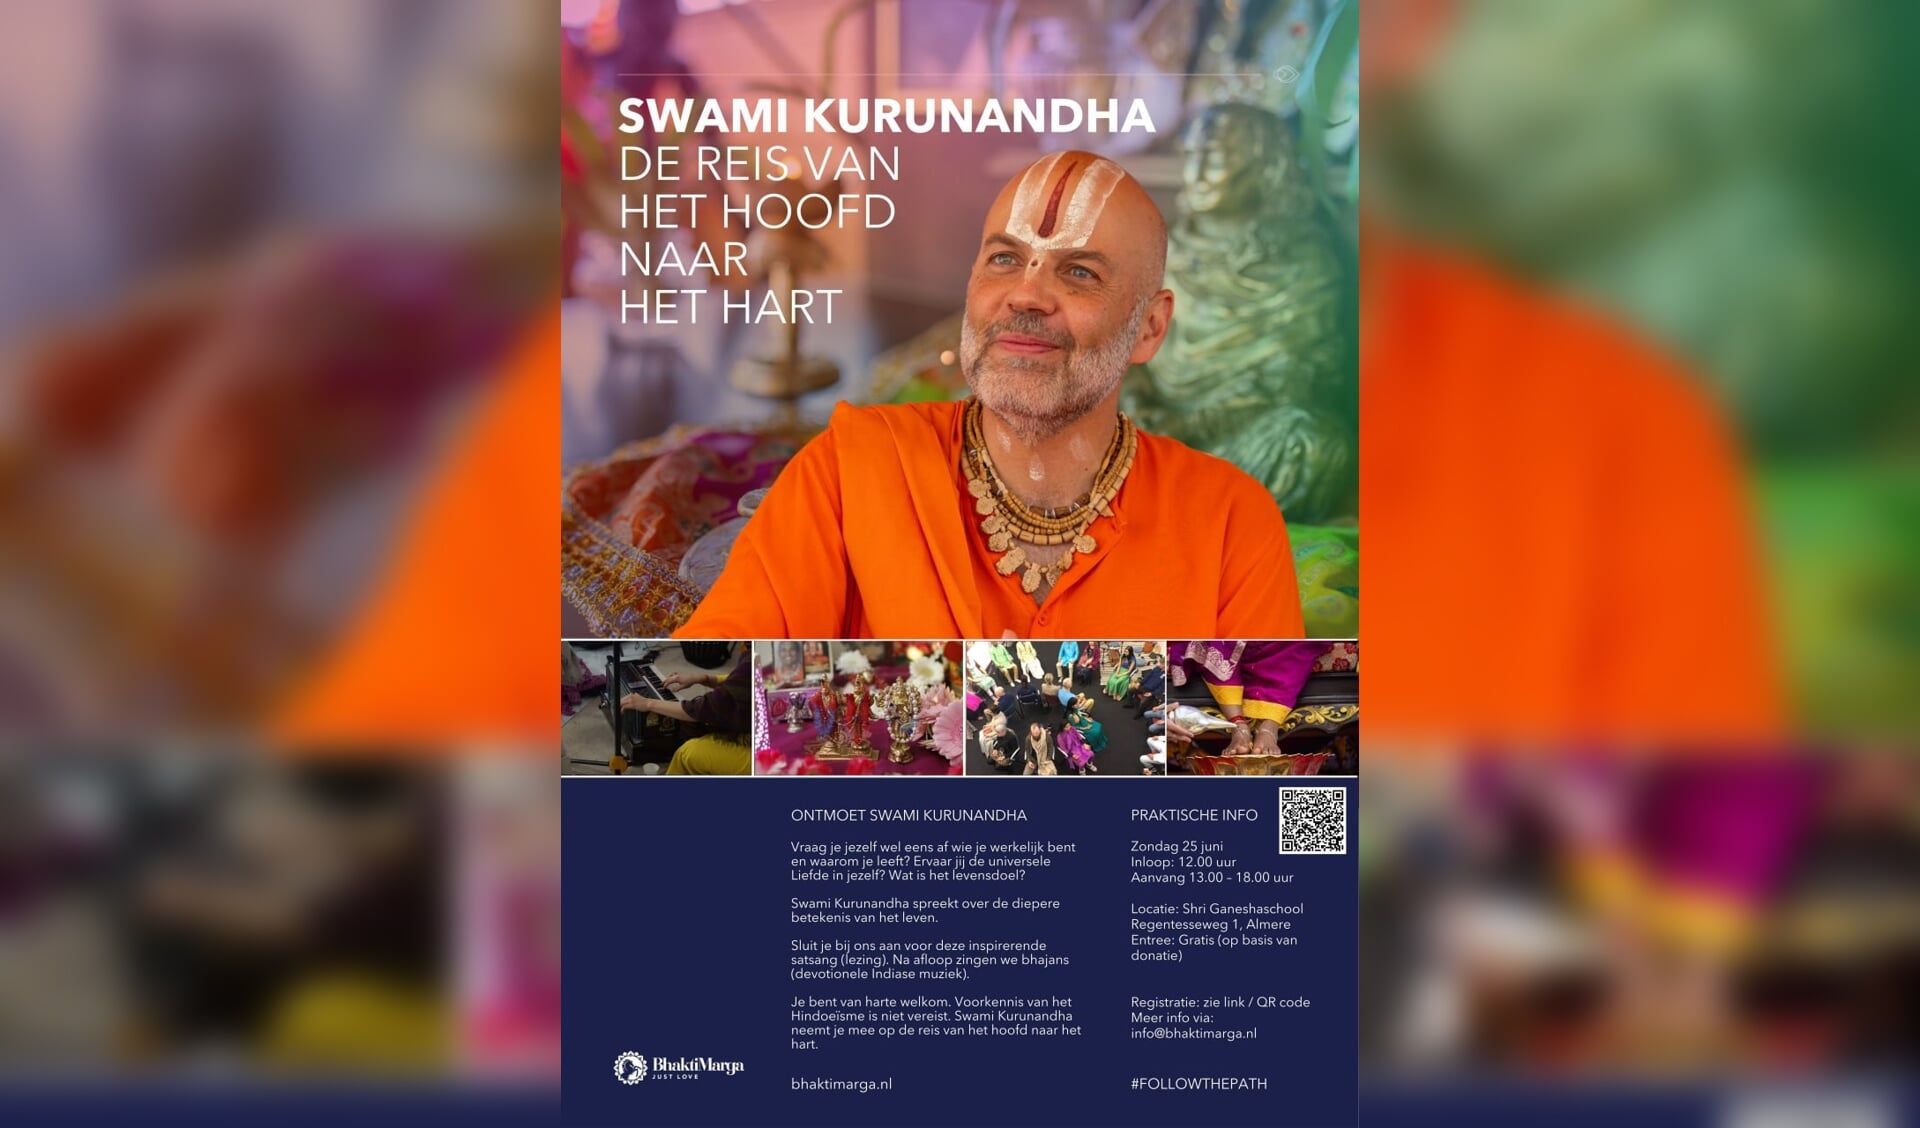 Swami Kurunandha De reis van het hoofd naar het hart